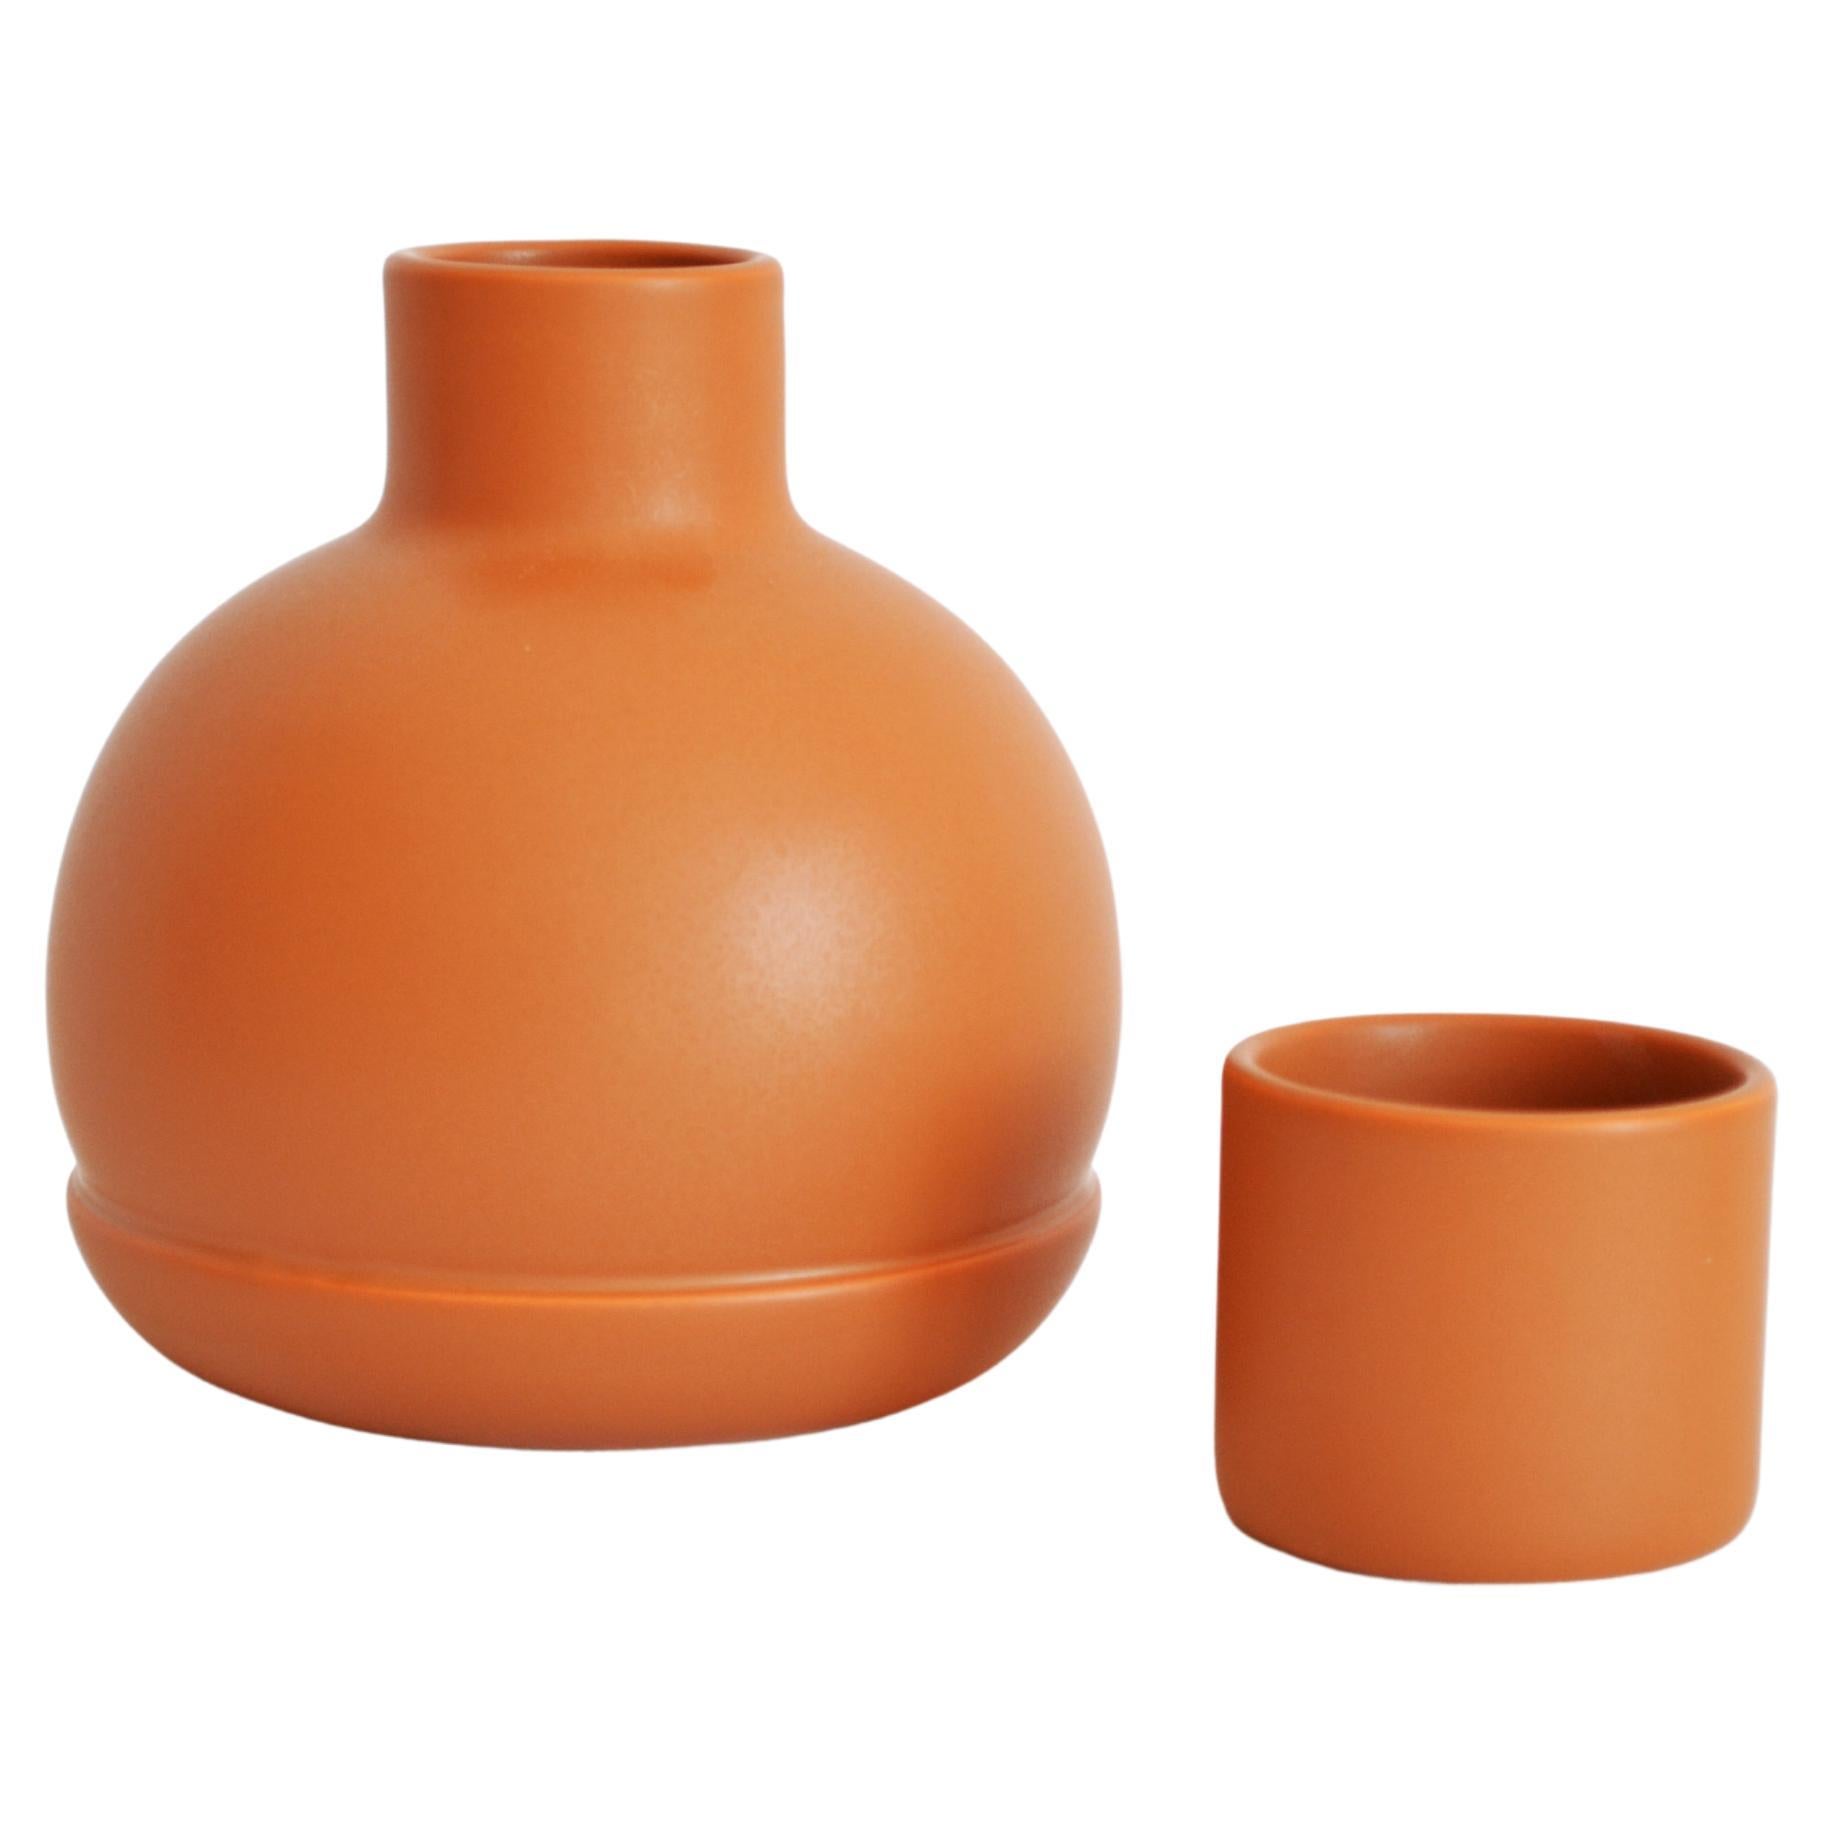 Carafe et verres orange. Inspiré des pichets traditionnels en céramique en vente